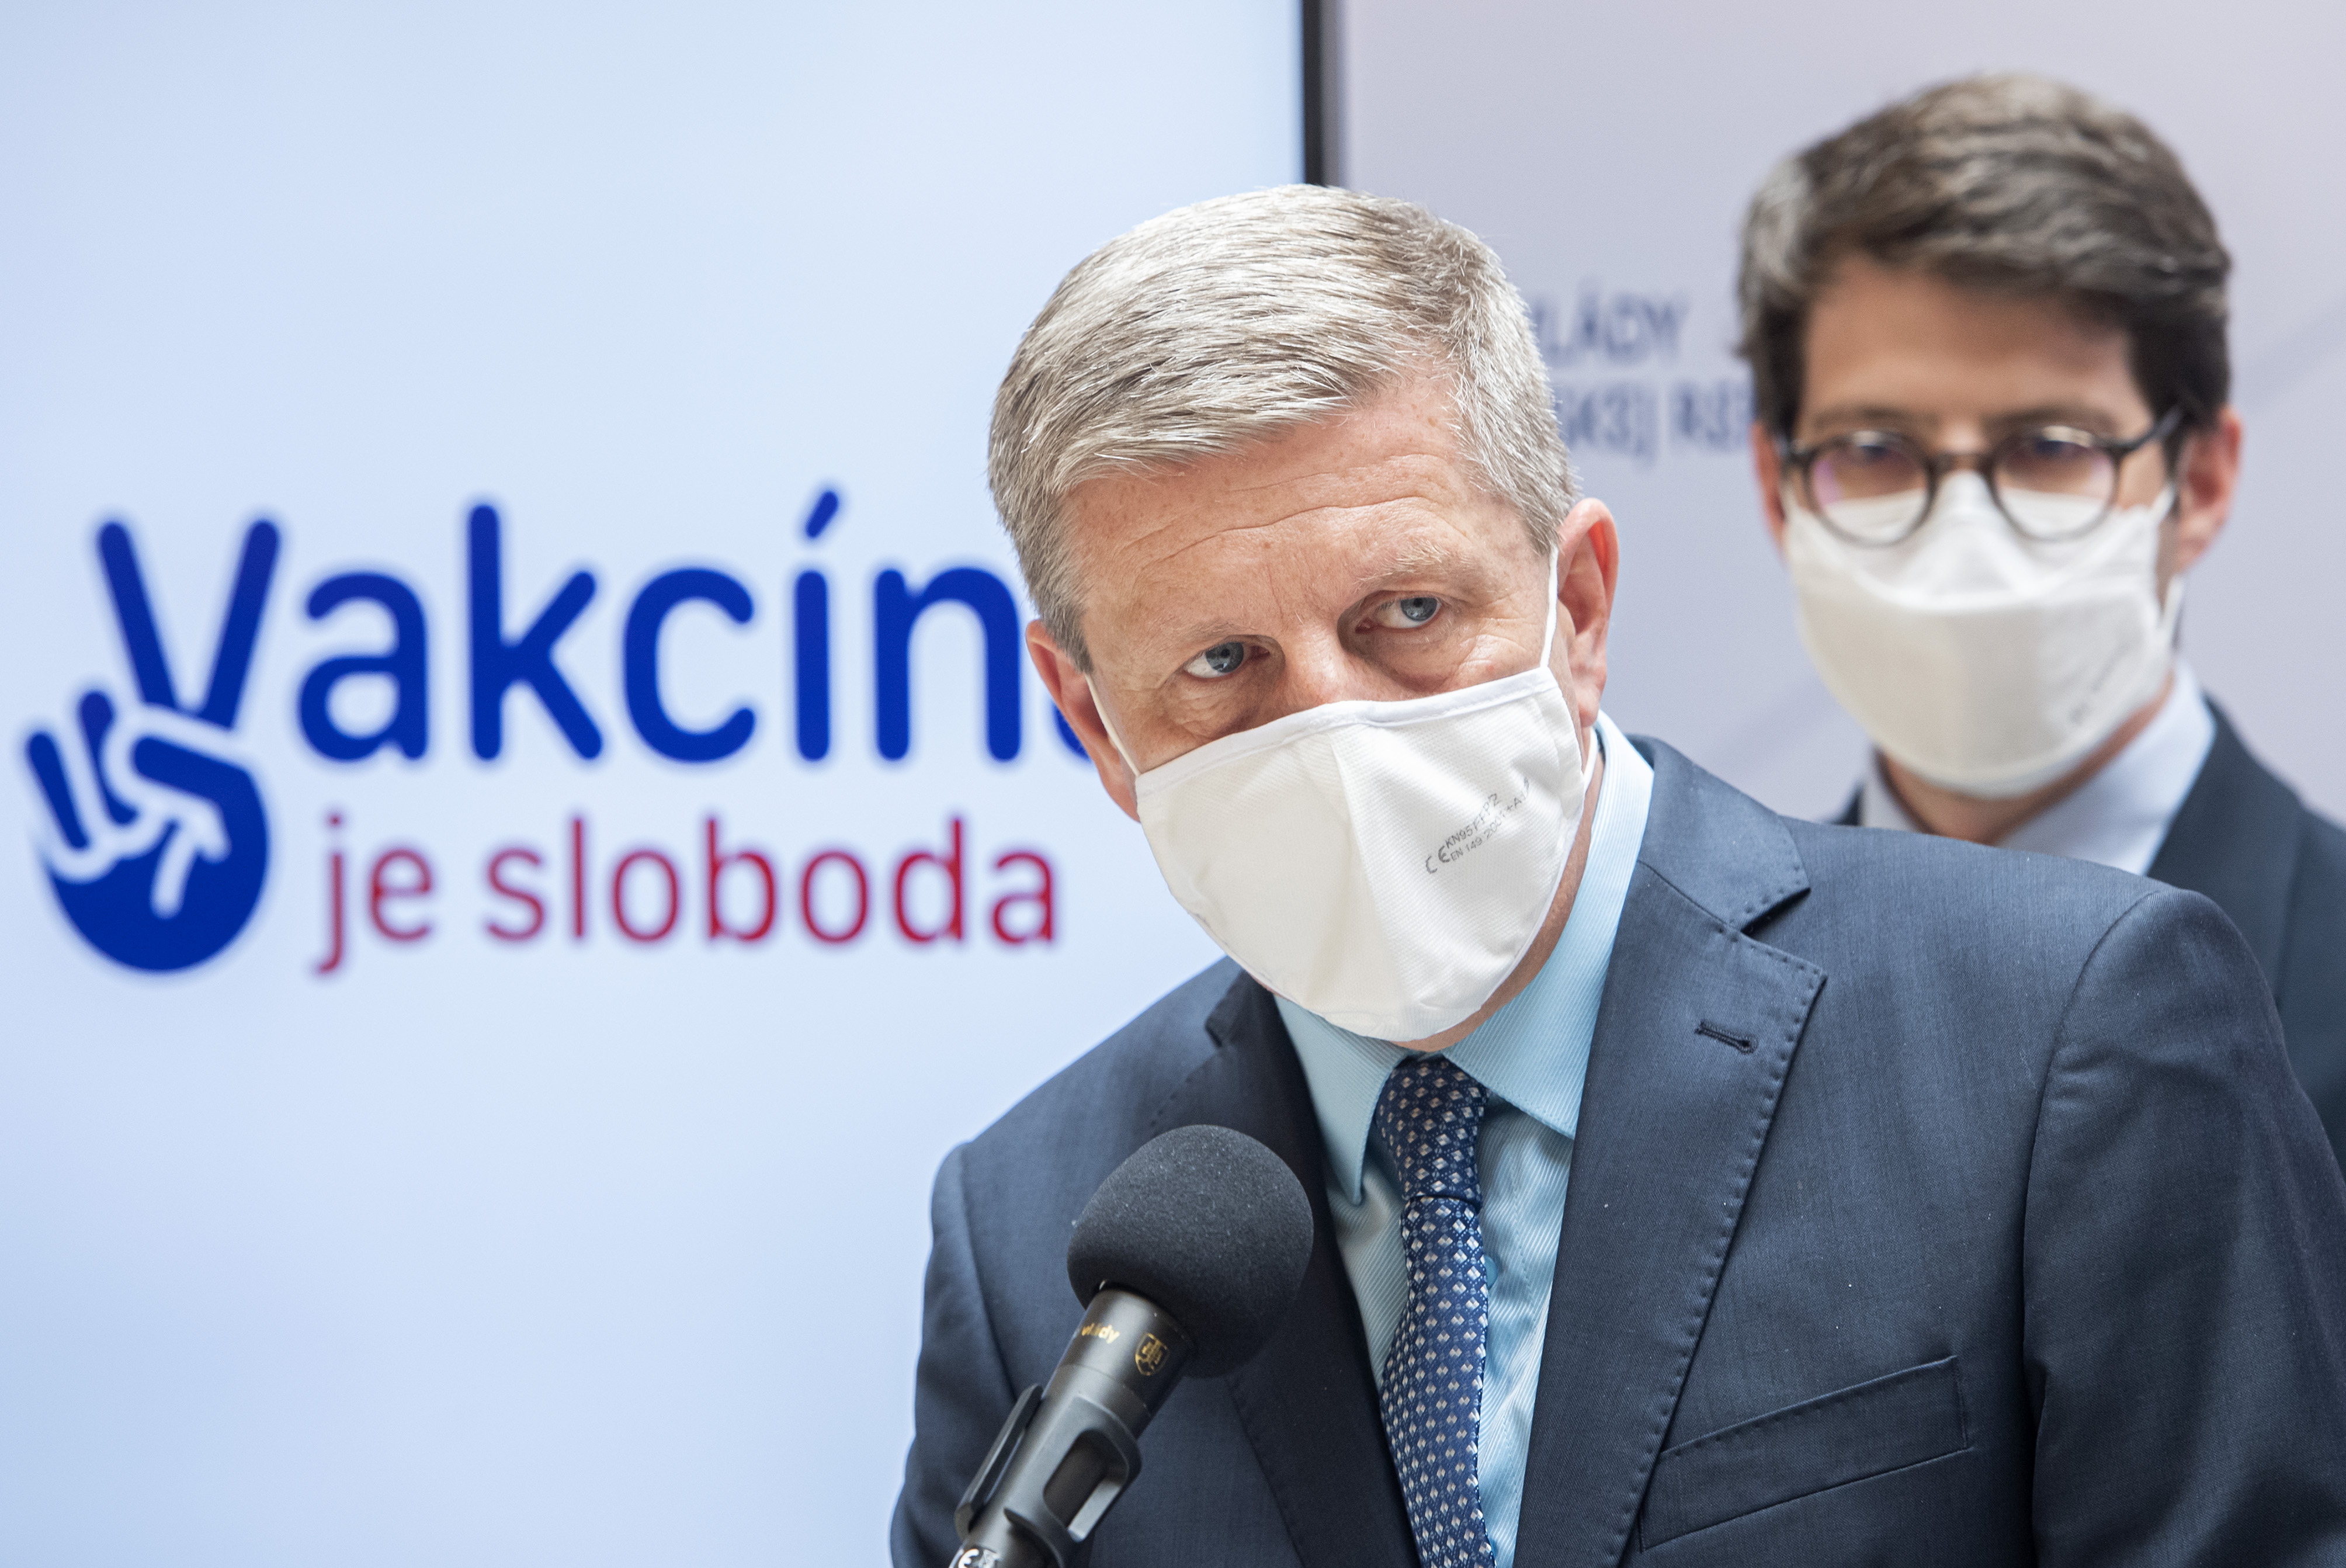 Vladimír Lengvarský, az OĽaNO által jelölt egészségügyi miniszter tegnap közölte, már korhatár nélkül bárkit beoltanak. A 16 és 17 évesek csak Pfizert kapnak, míg a 18 évesnél idősebbeknek a Pfizeren kívül a Moderna vakcináját is beadhatják. ⋌(Fotó: TASR)